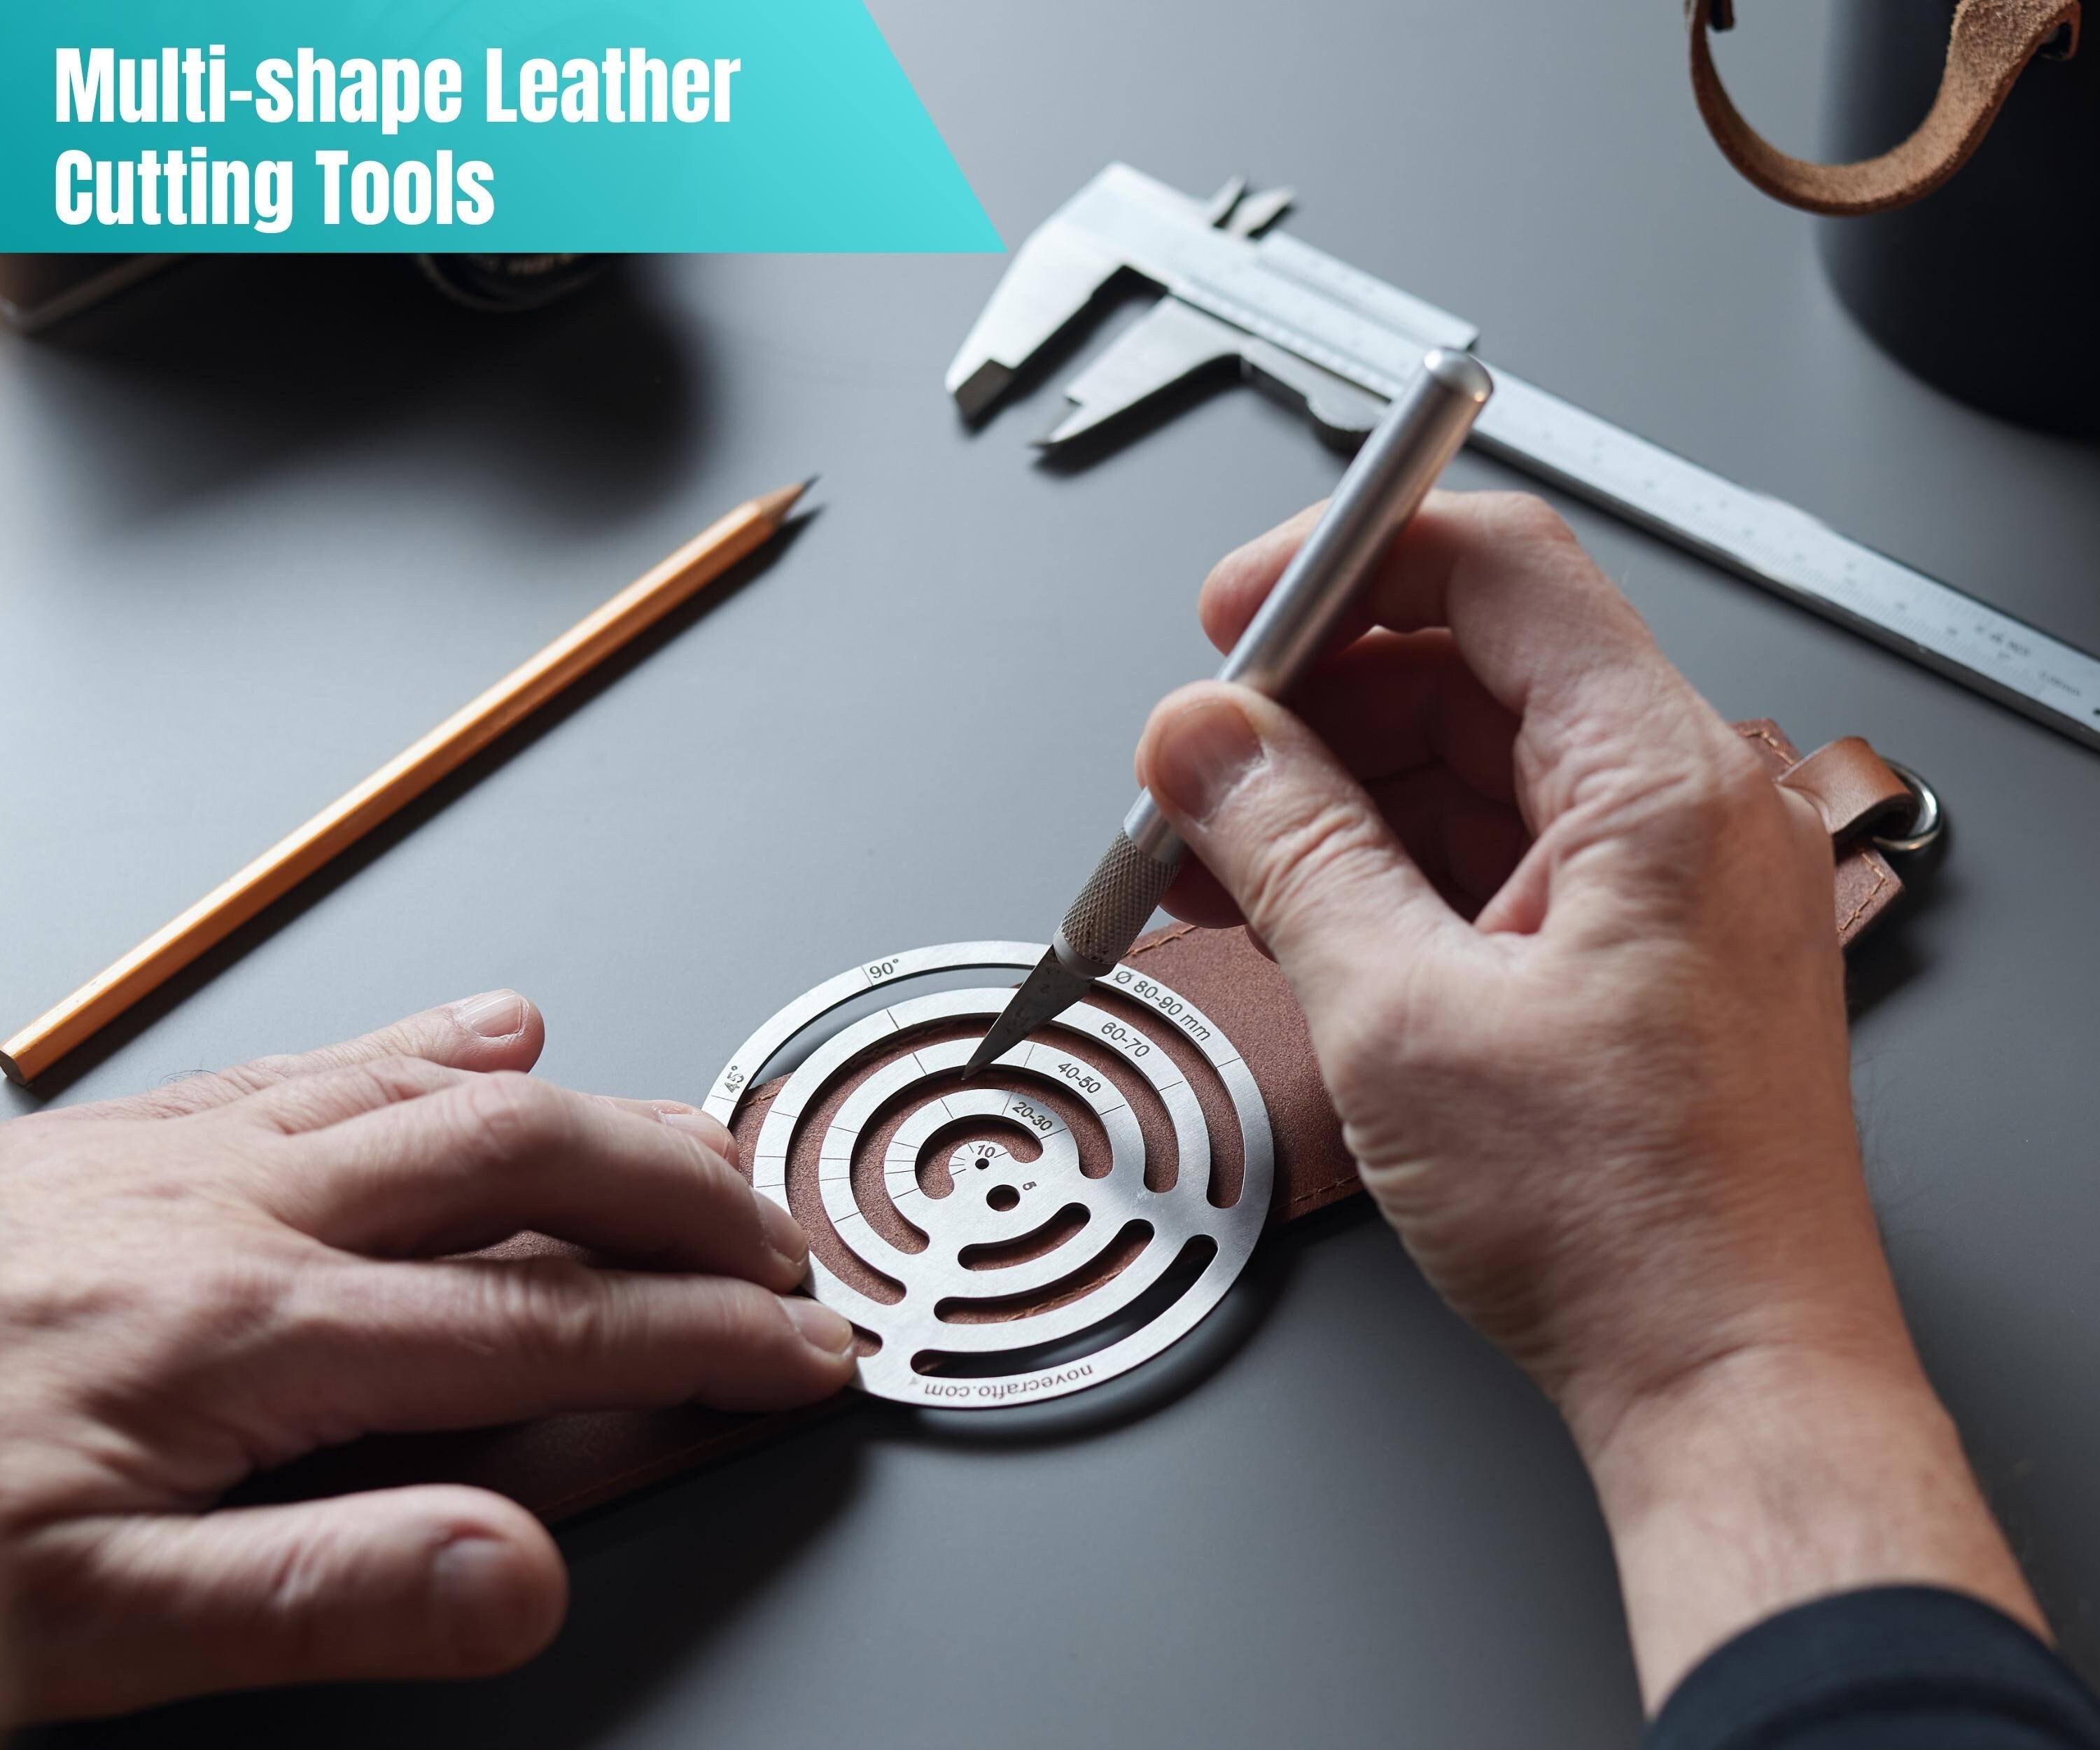 Aibecy NDK Rotary Boussole coupe-cercles Outil de coupe réglable pour carton de papier de cuir en caoutchouc DIY Craft Tool 